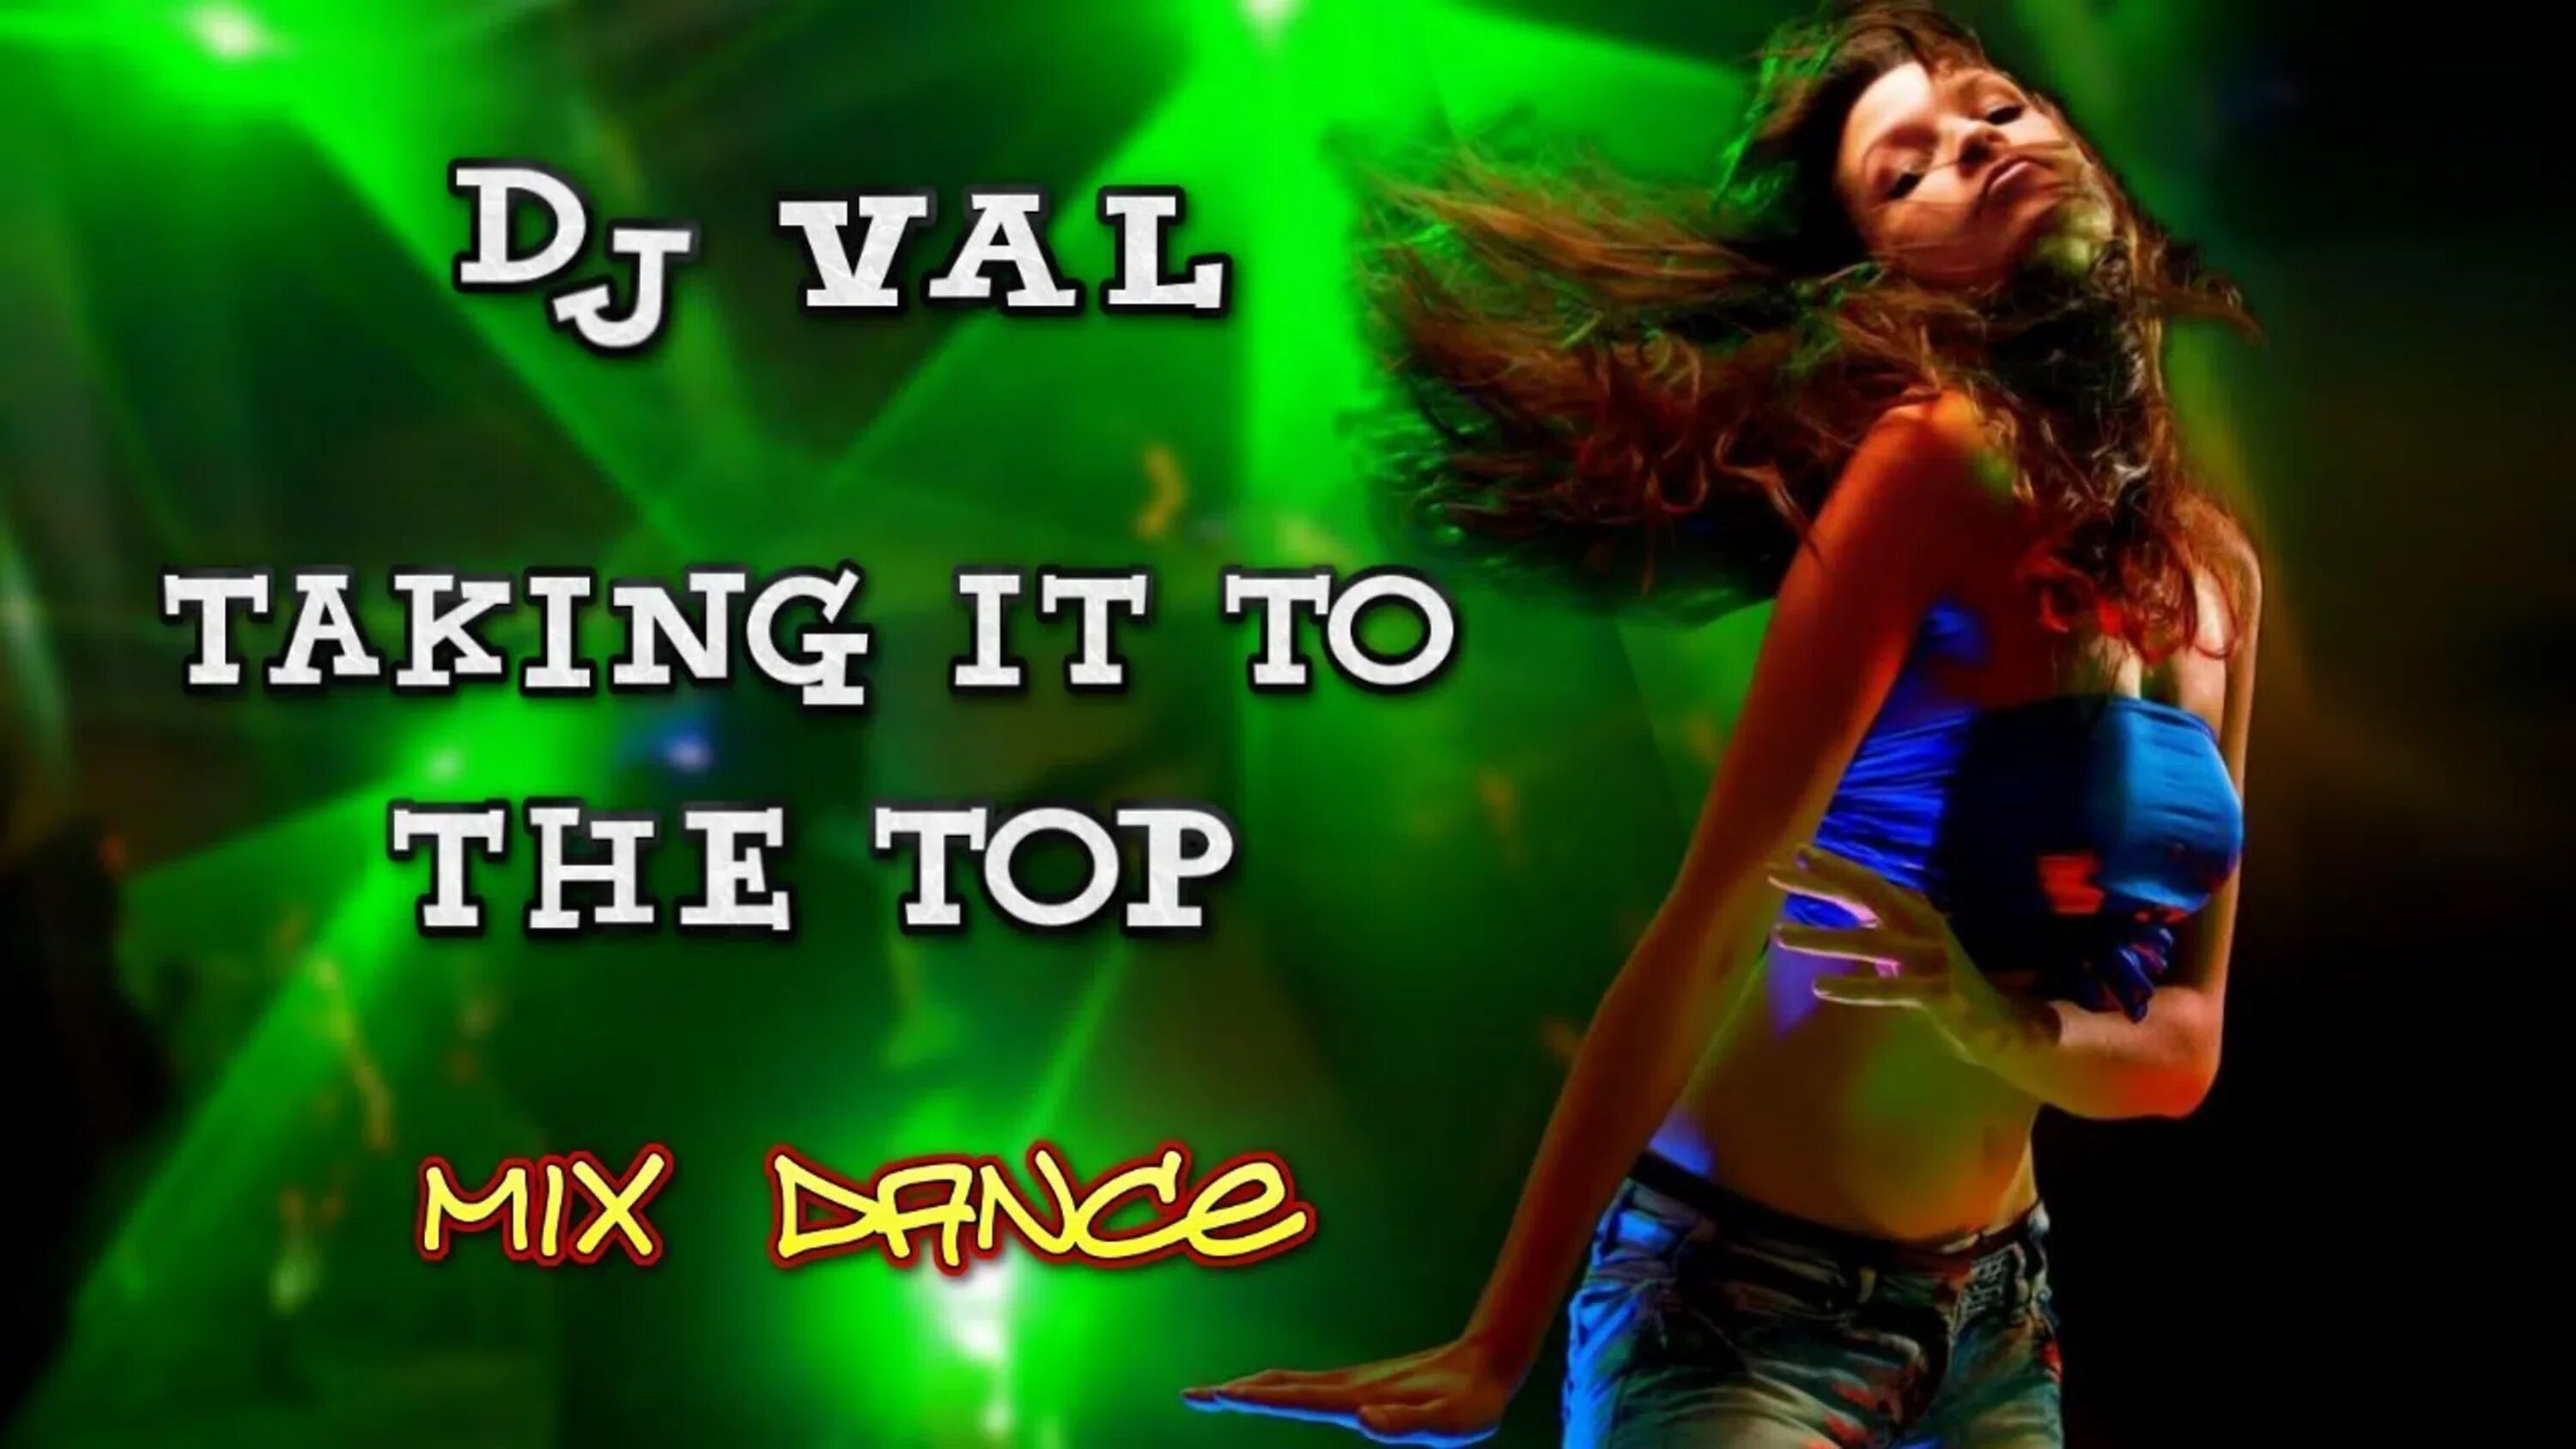 Dj val turn. DJ Val - taking it to the Top. Евродэнс DJ Val. DJ Val i like. DJ Val Remix.